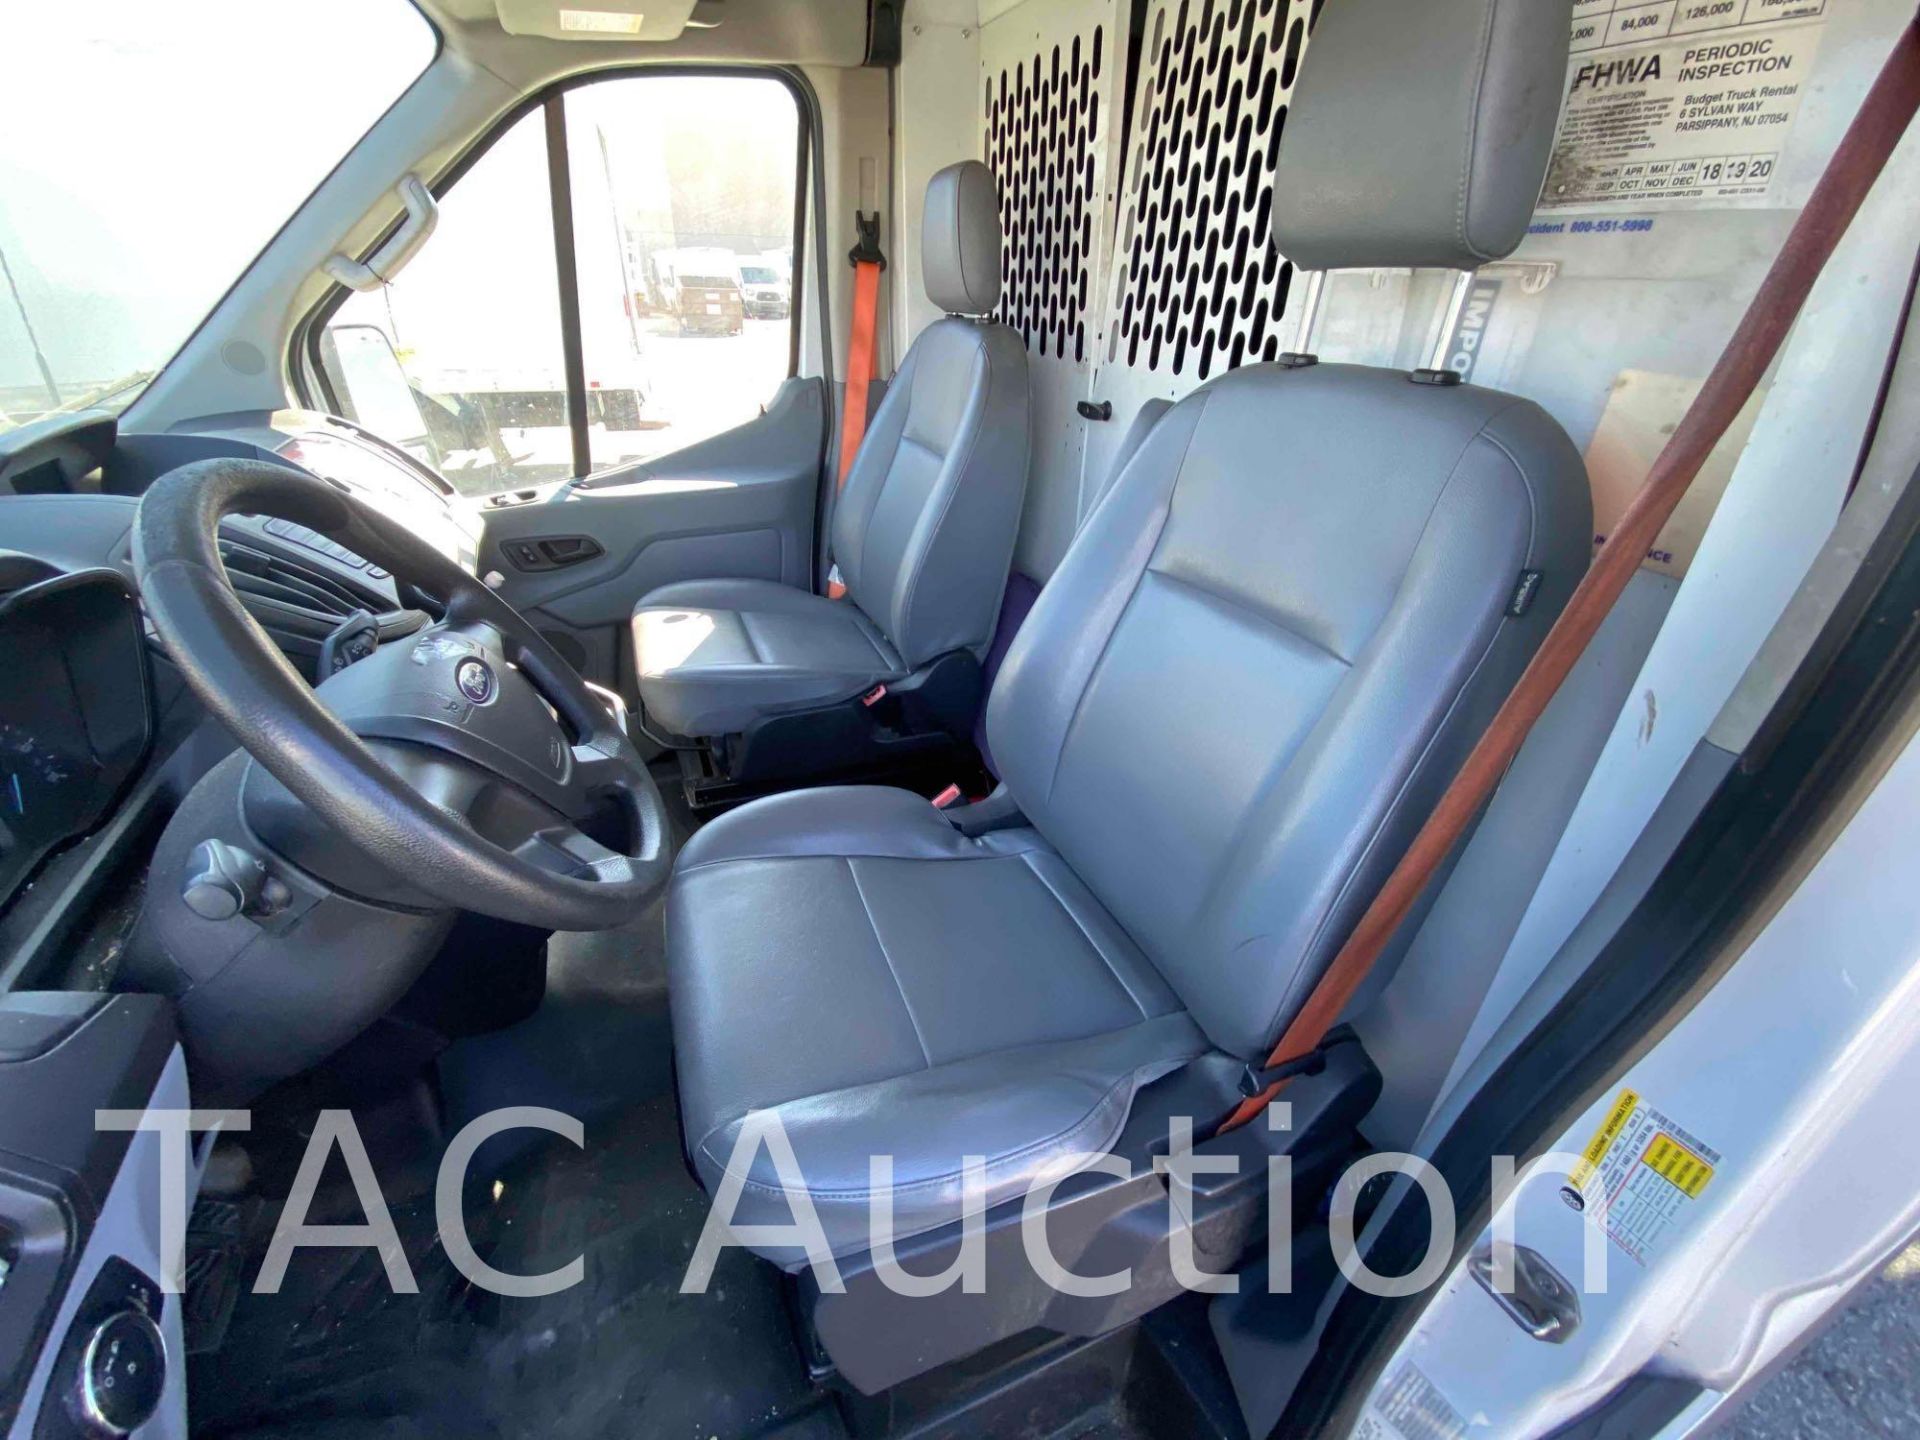 2019 Ford Transit 150 Cargo Van - Image 18 of 39